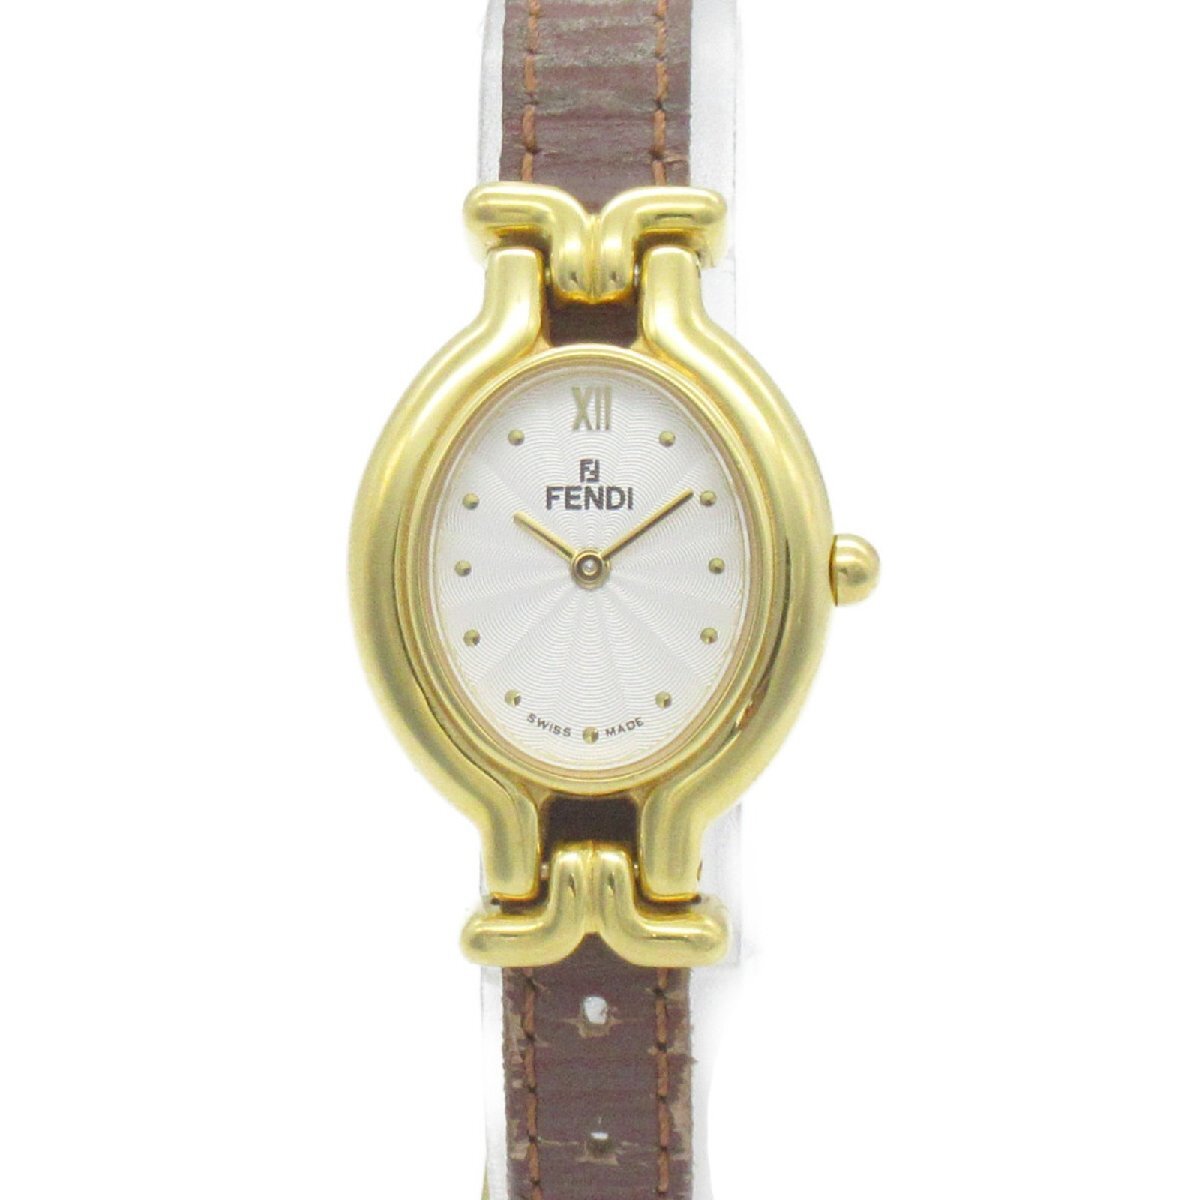  Fendi перемена ремень наручные часы часы бренд off FENDI GP( Gold металлизированный ) наручные часы GP/ кожа б/у женский 